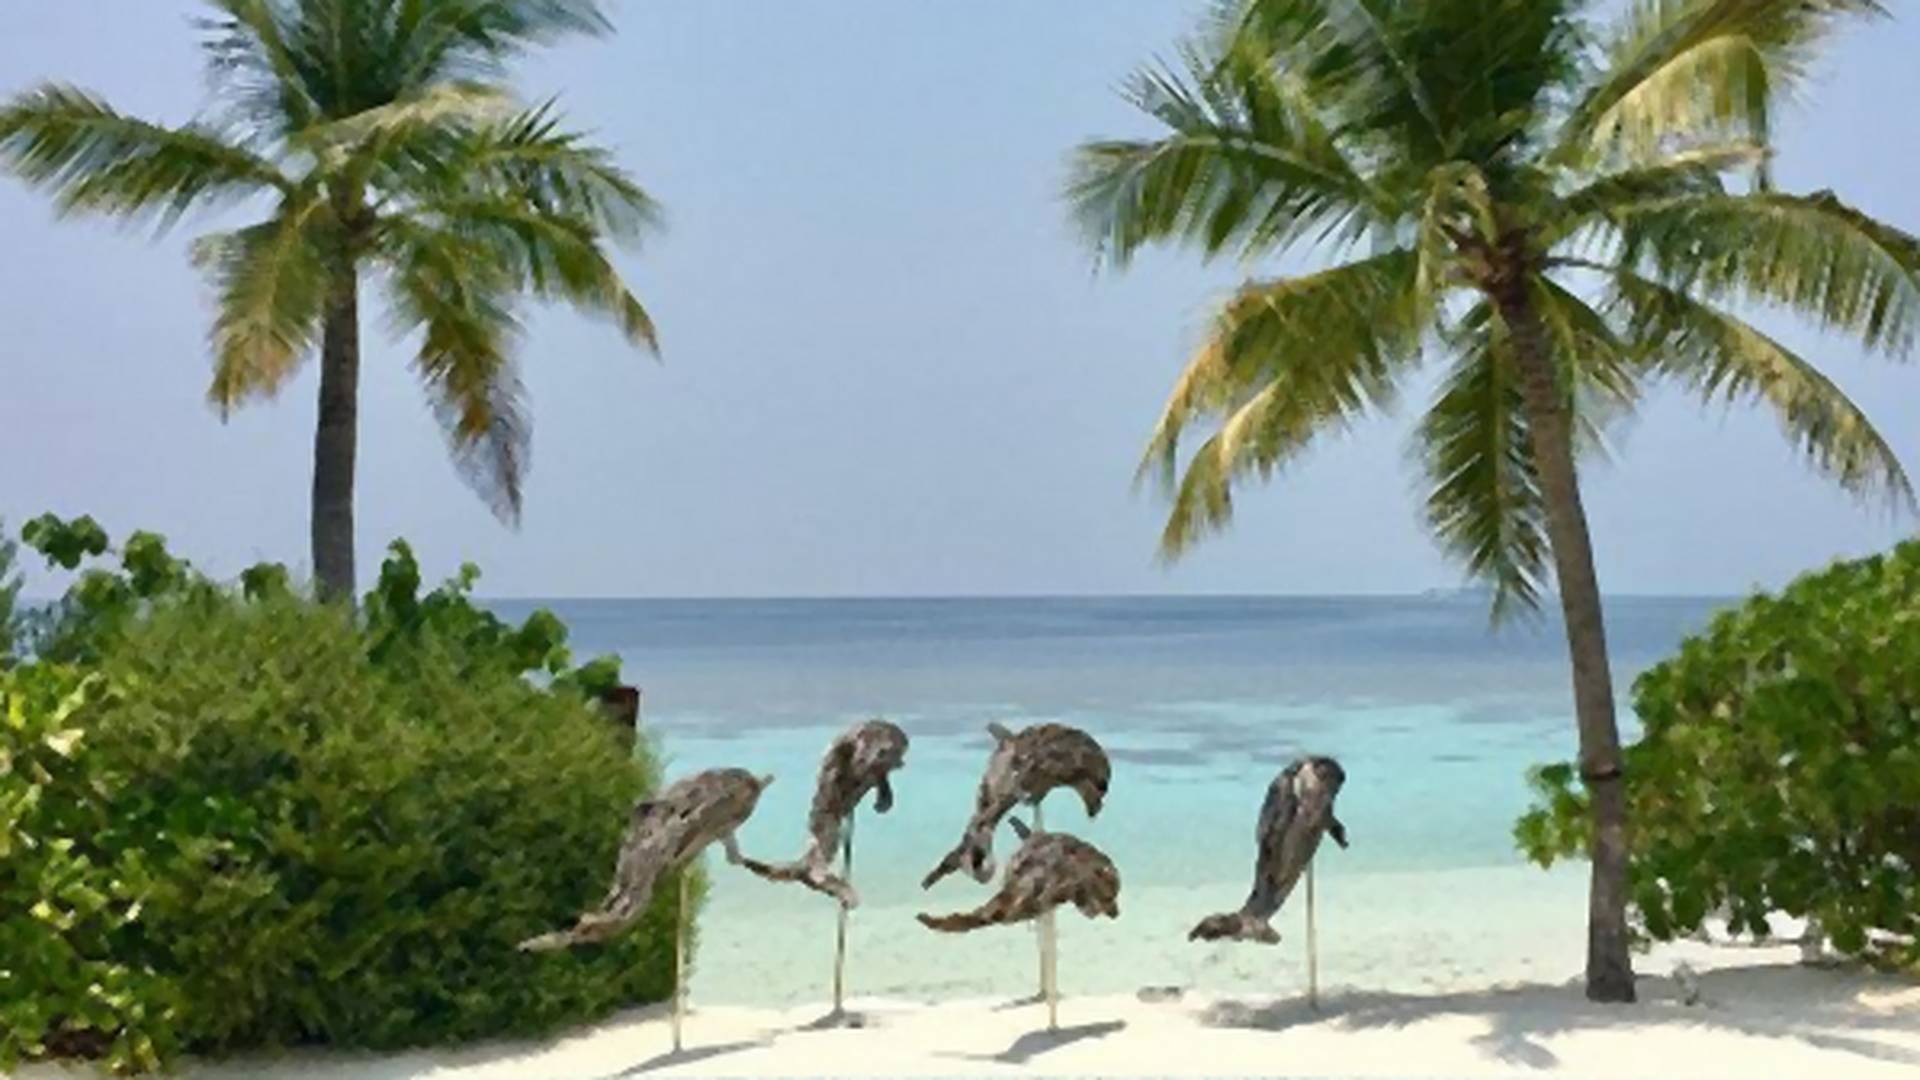 Ostrvo na Maldivima je dokaz da raj na zemlji postoji